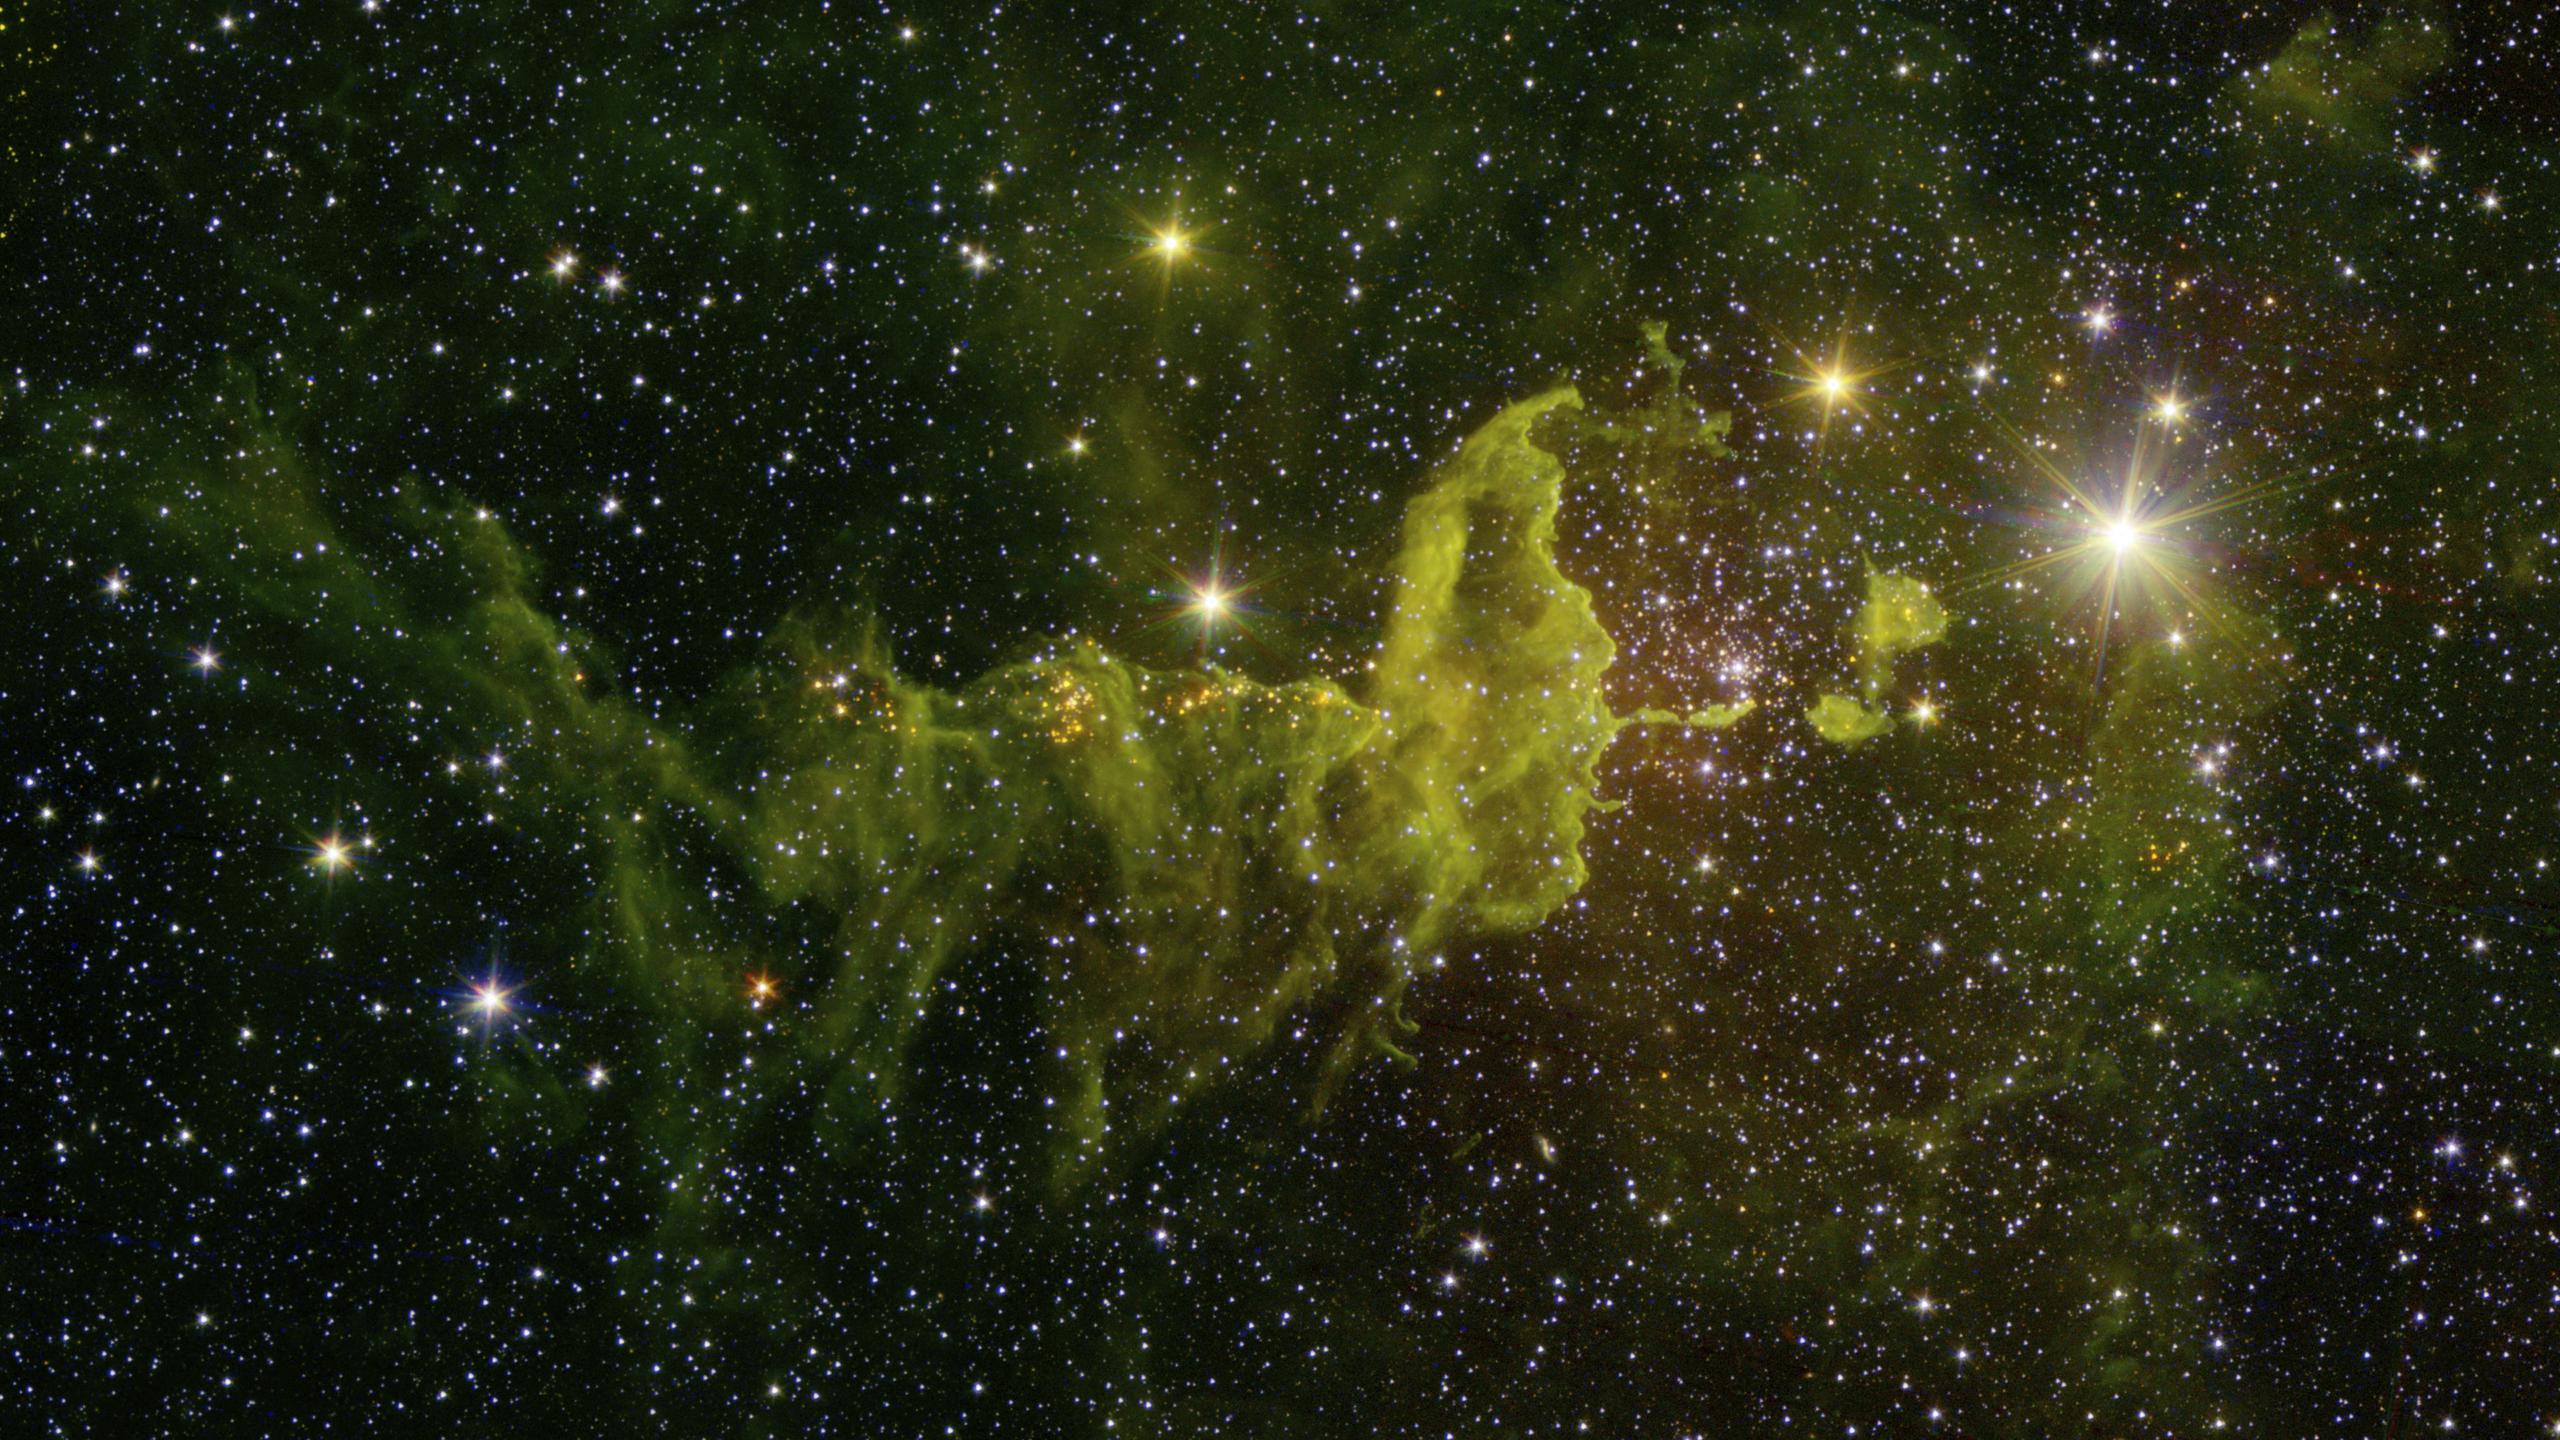 Imagen compuesta de la nebulosa “La araña y la mosca”, capturada por el Telescopio Espacial Spitzer.